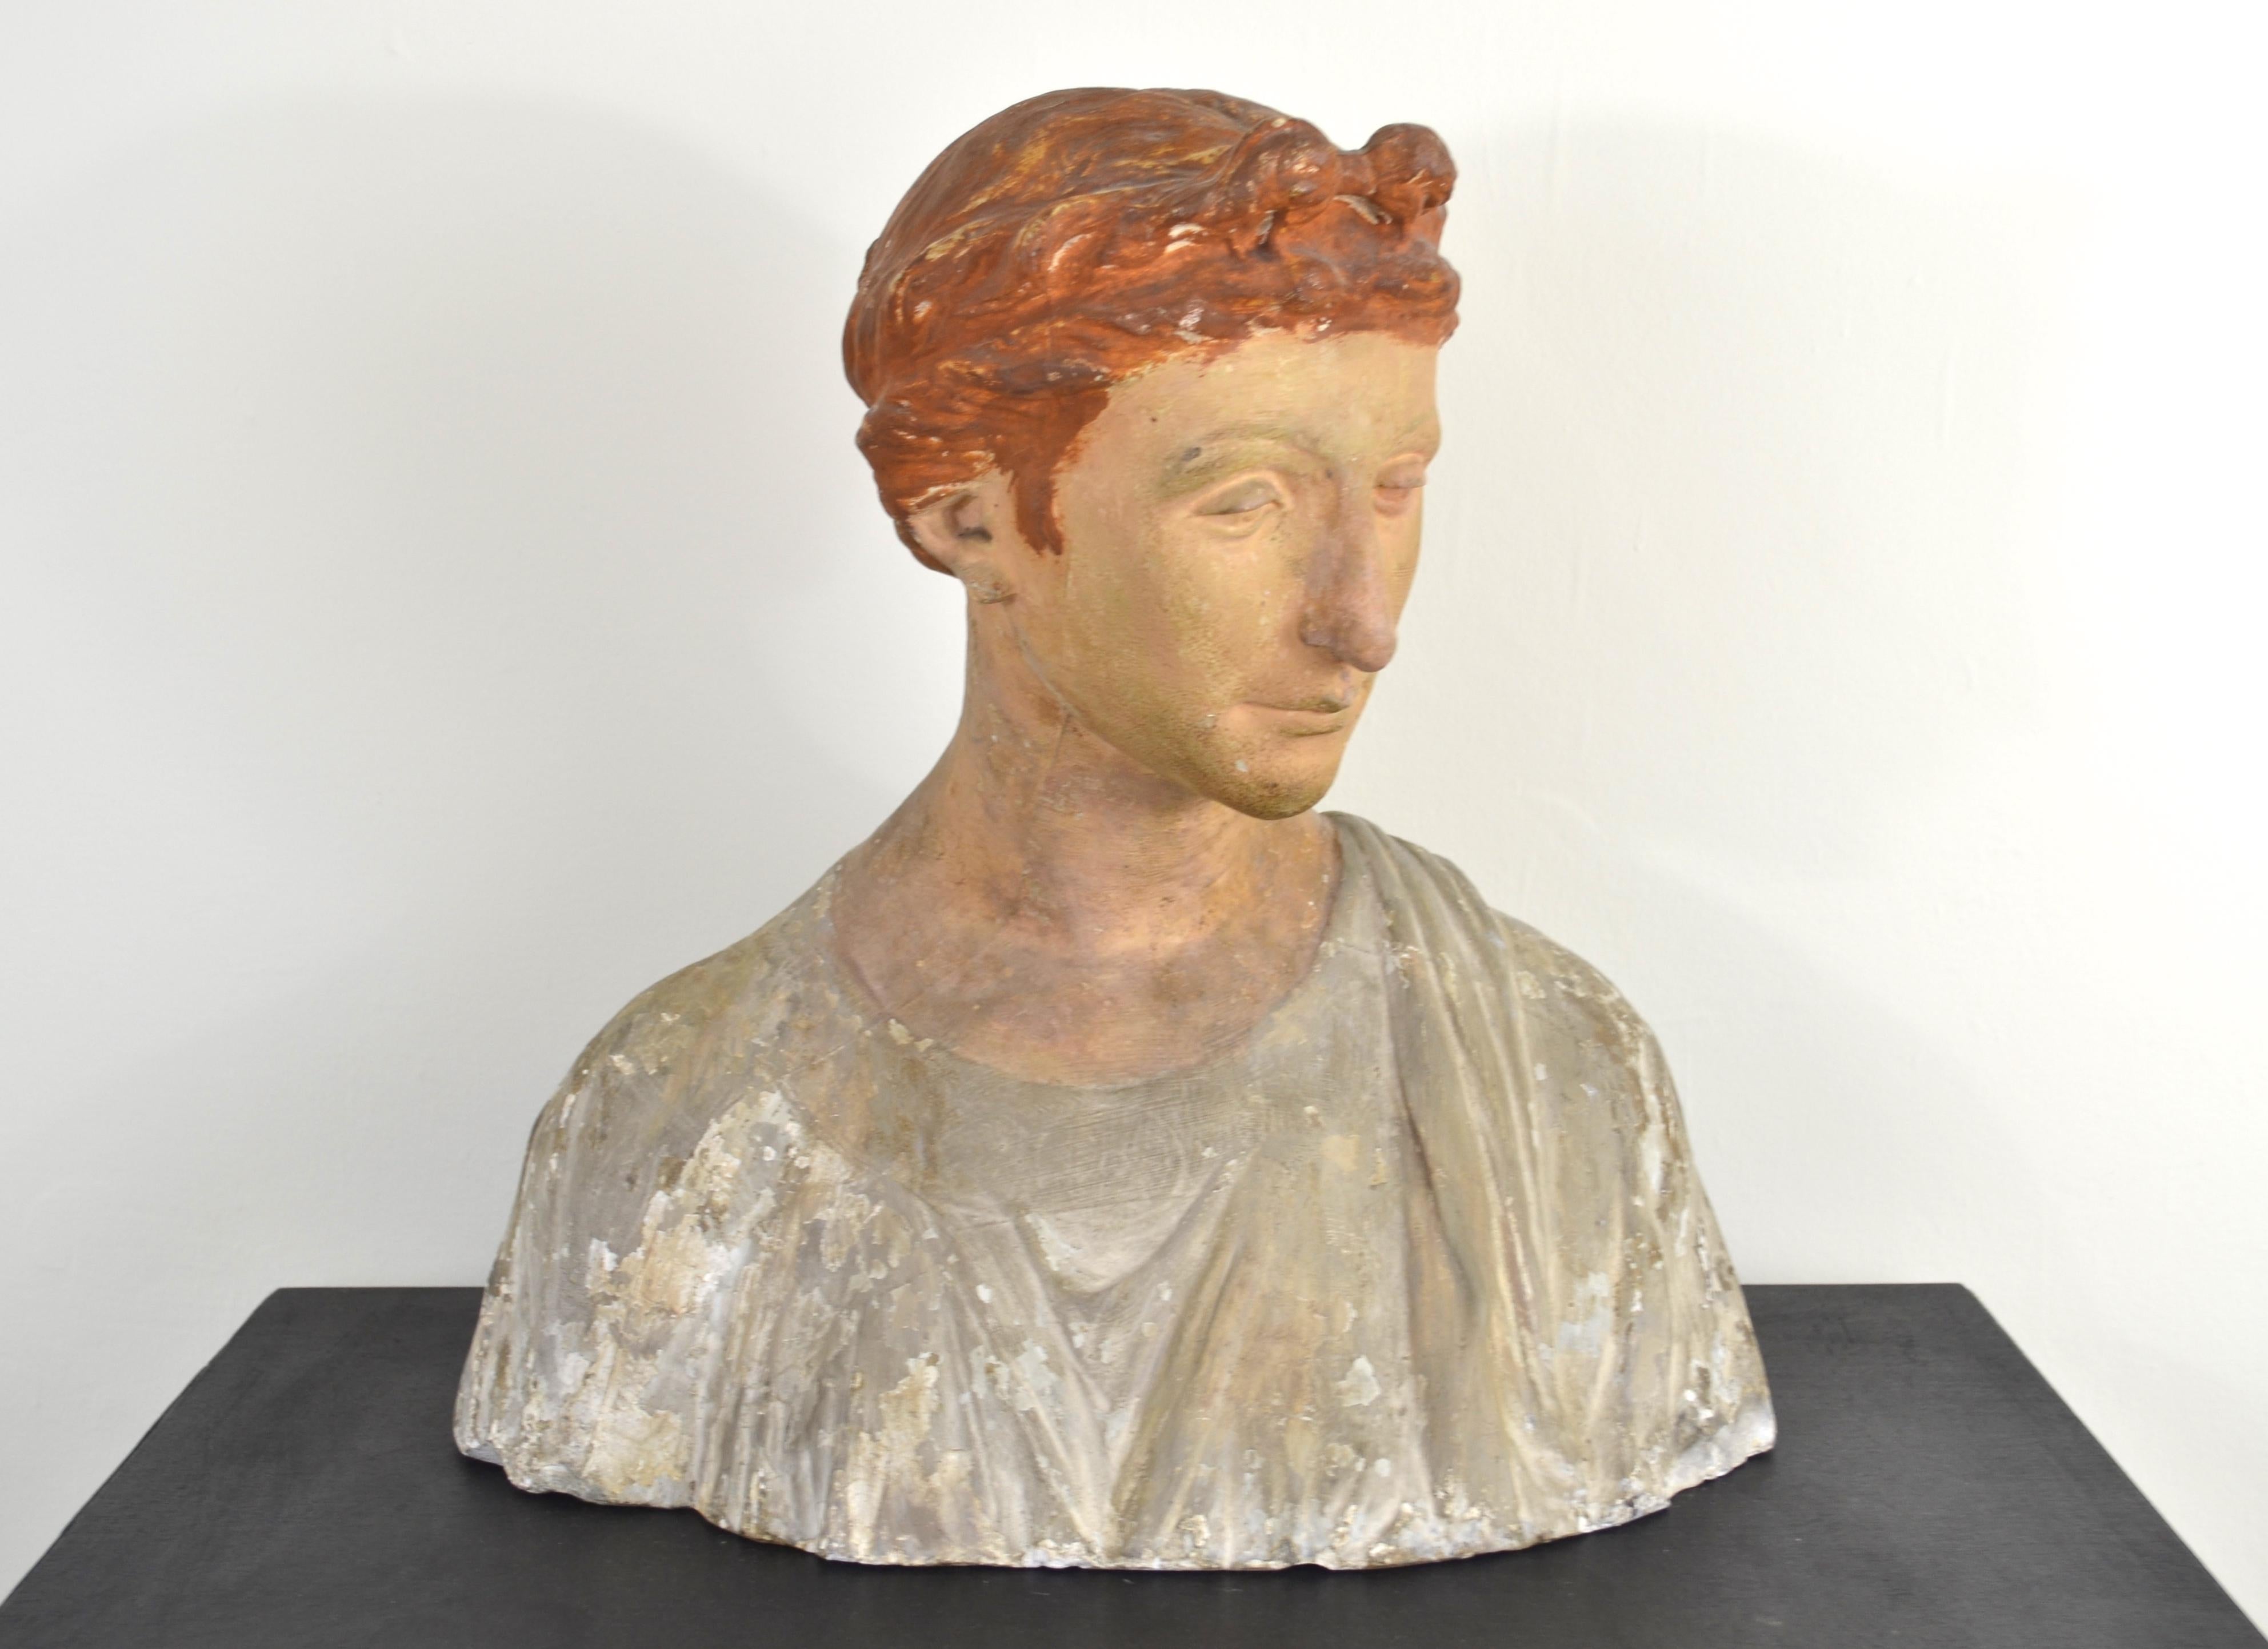 D Brucciani & Co Figurative Sculpture - St Cecilia